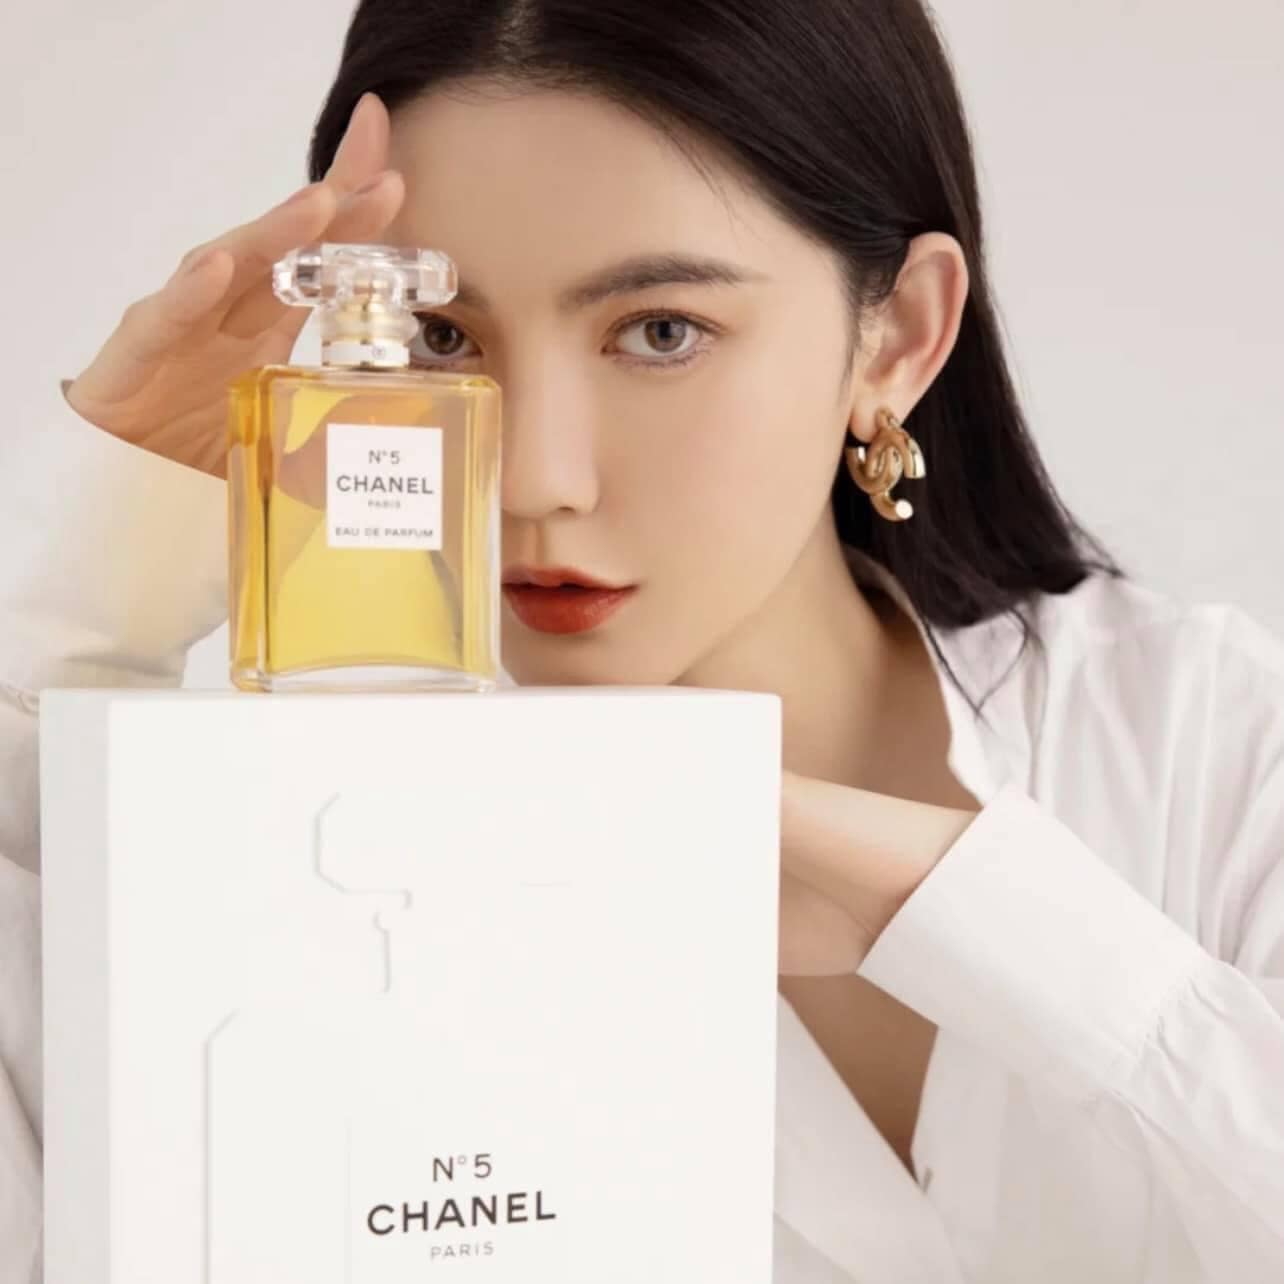 Chanel No 5 Eau de Parfum 3 - Nuochoarosa.com - Nước hoa cao cấp, chính hãng giá tốt, mẫu mới